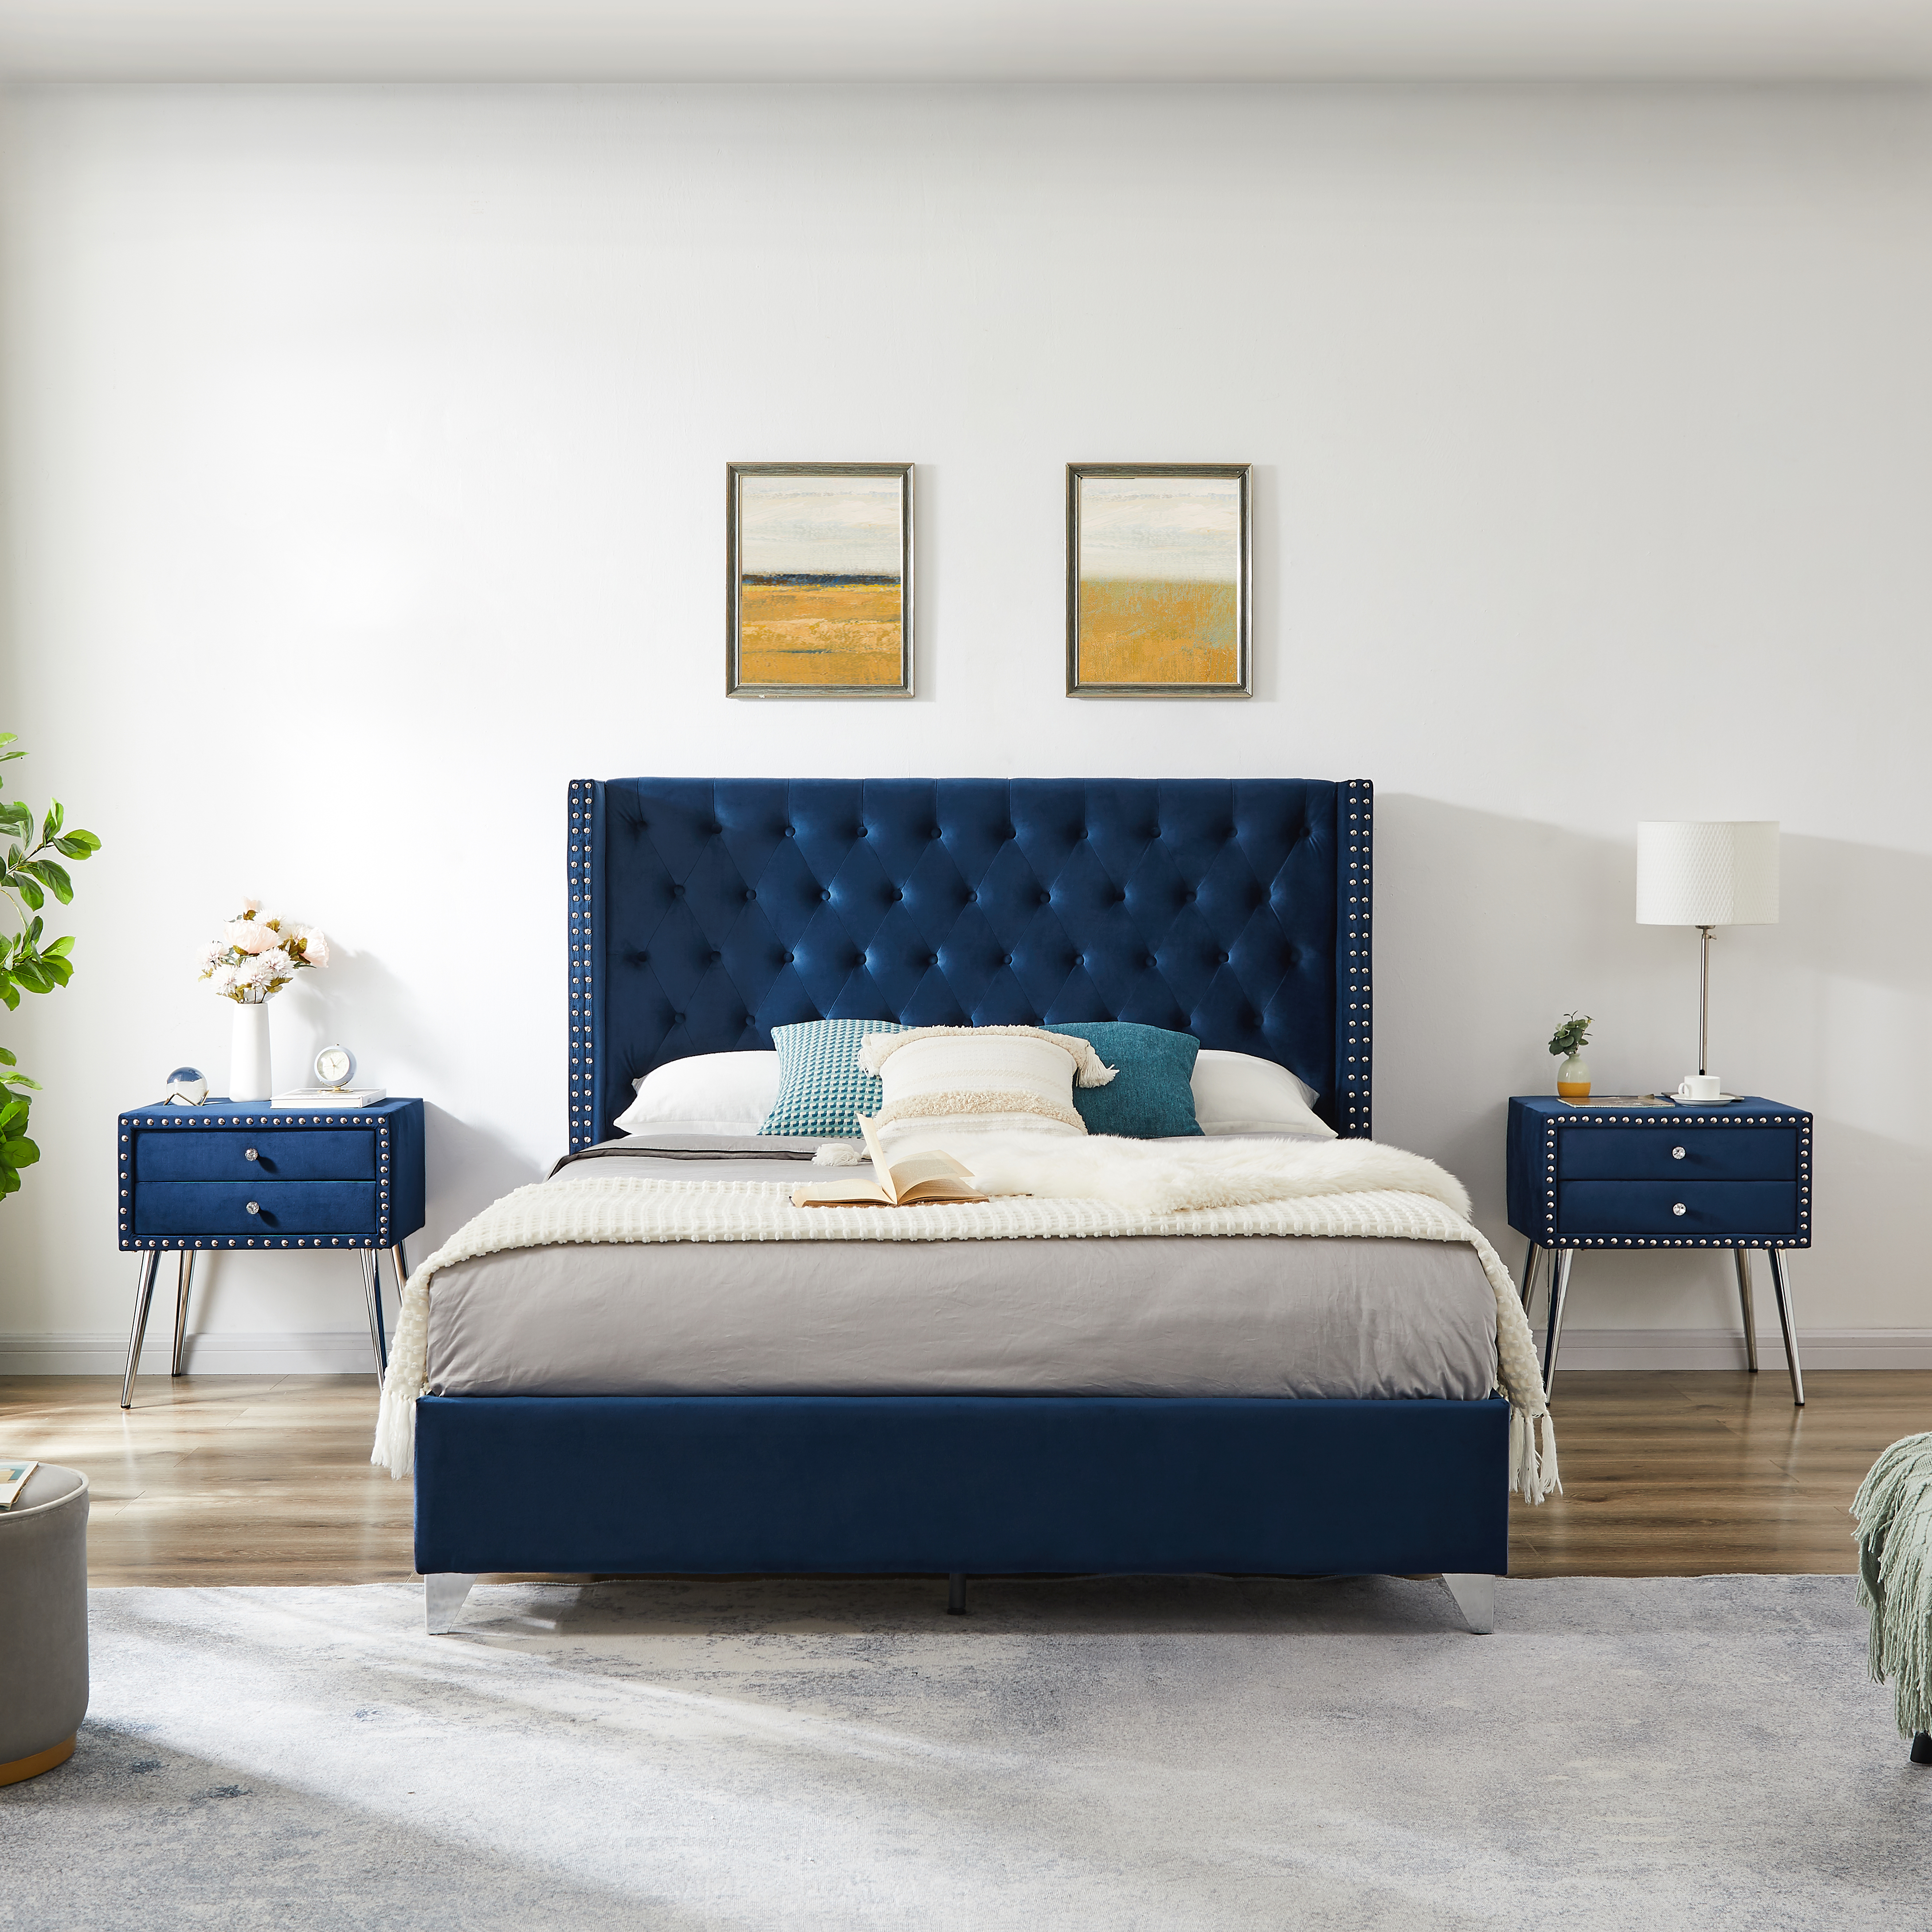 B109 Soft mattress with copper nail headboard, Queen bed, strong wooden slats + metal support feet, Dark Blue Flannelette-CASAINC